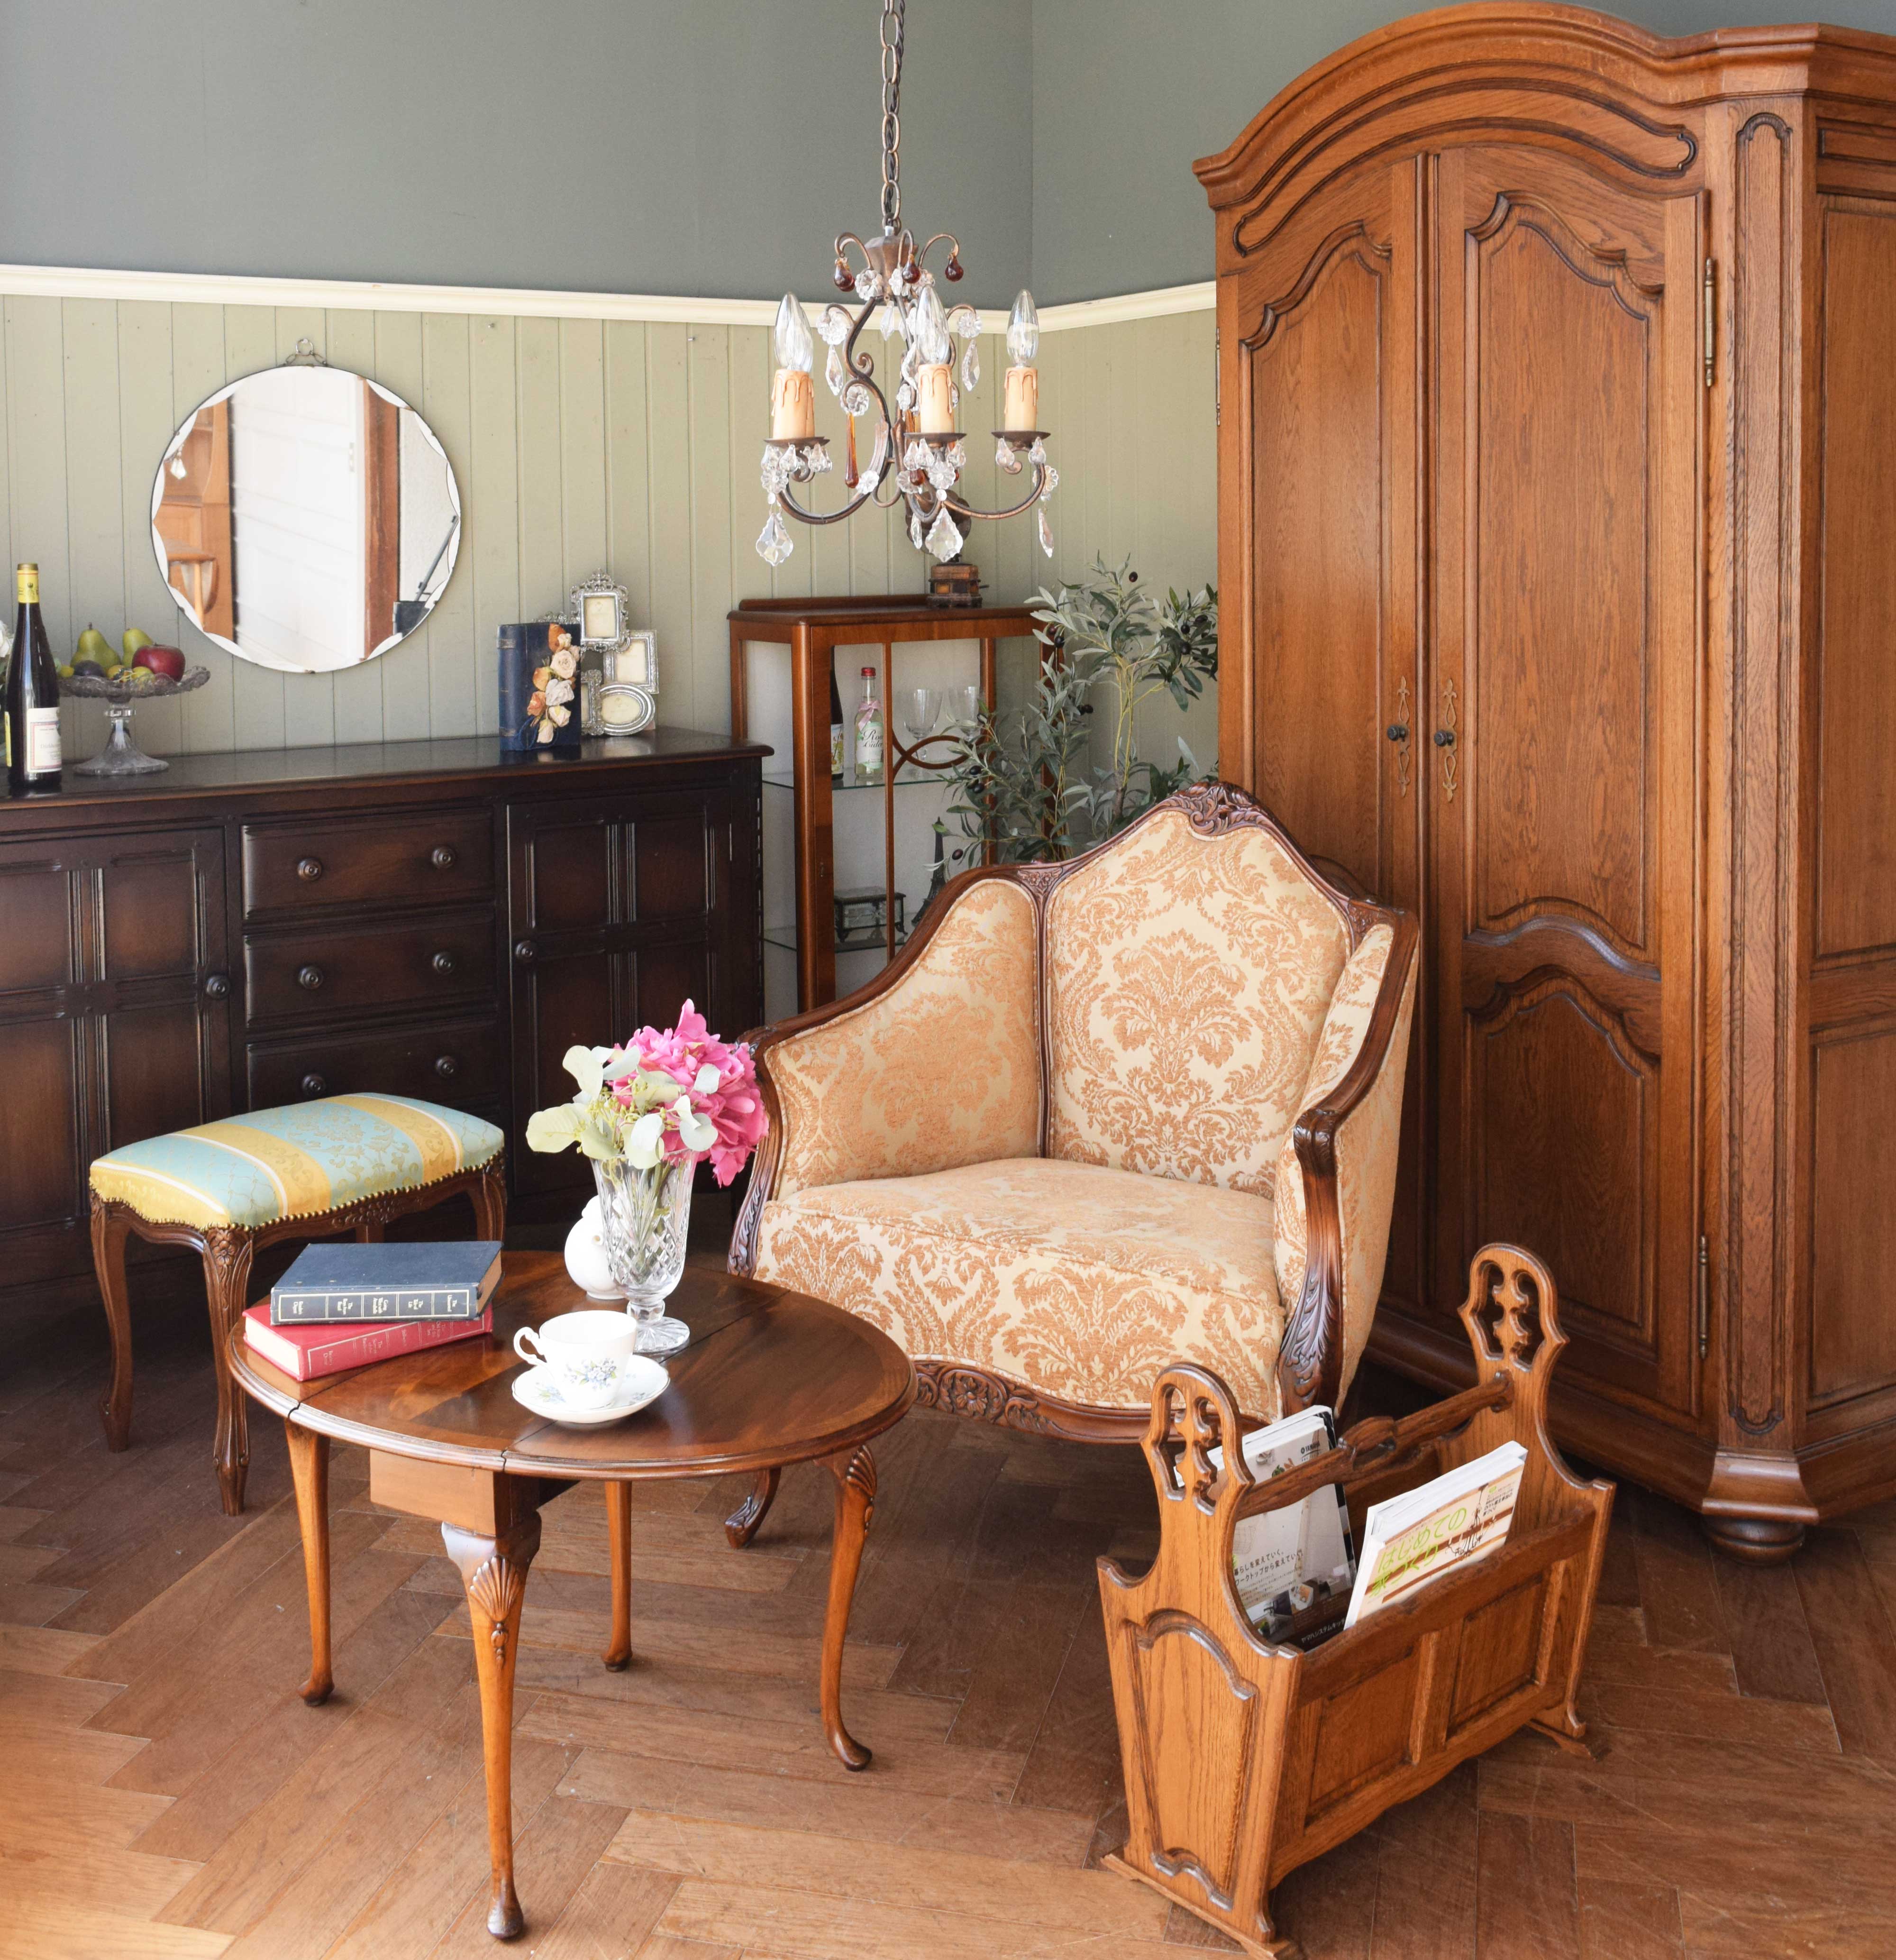 北欧ビンテージのリビング | アンティーク調の椅子を中心におしゃべりを楽しむ家具